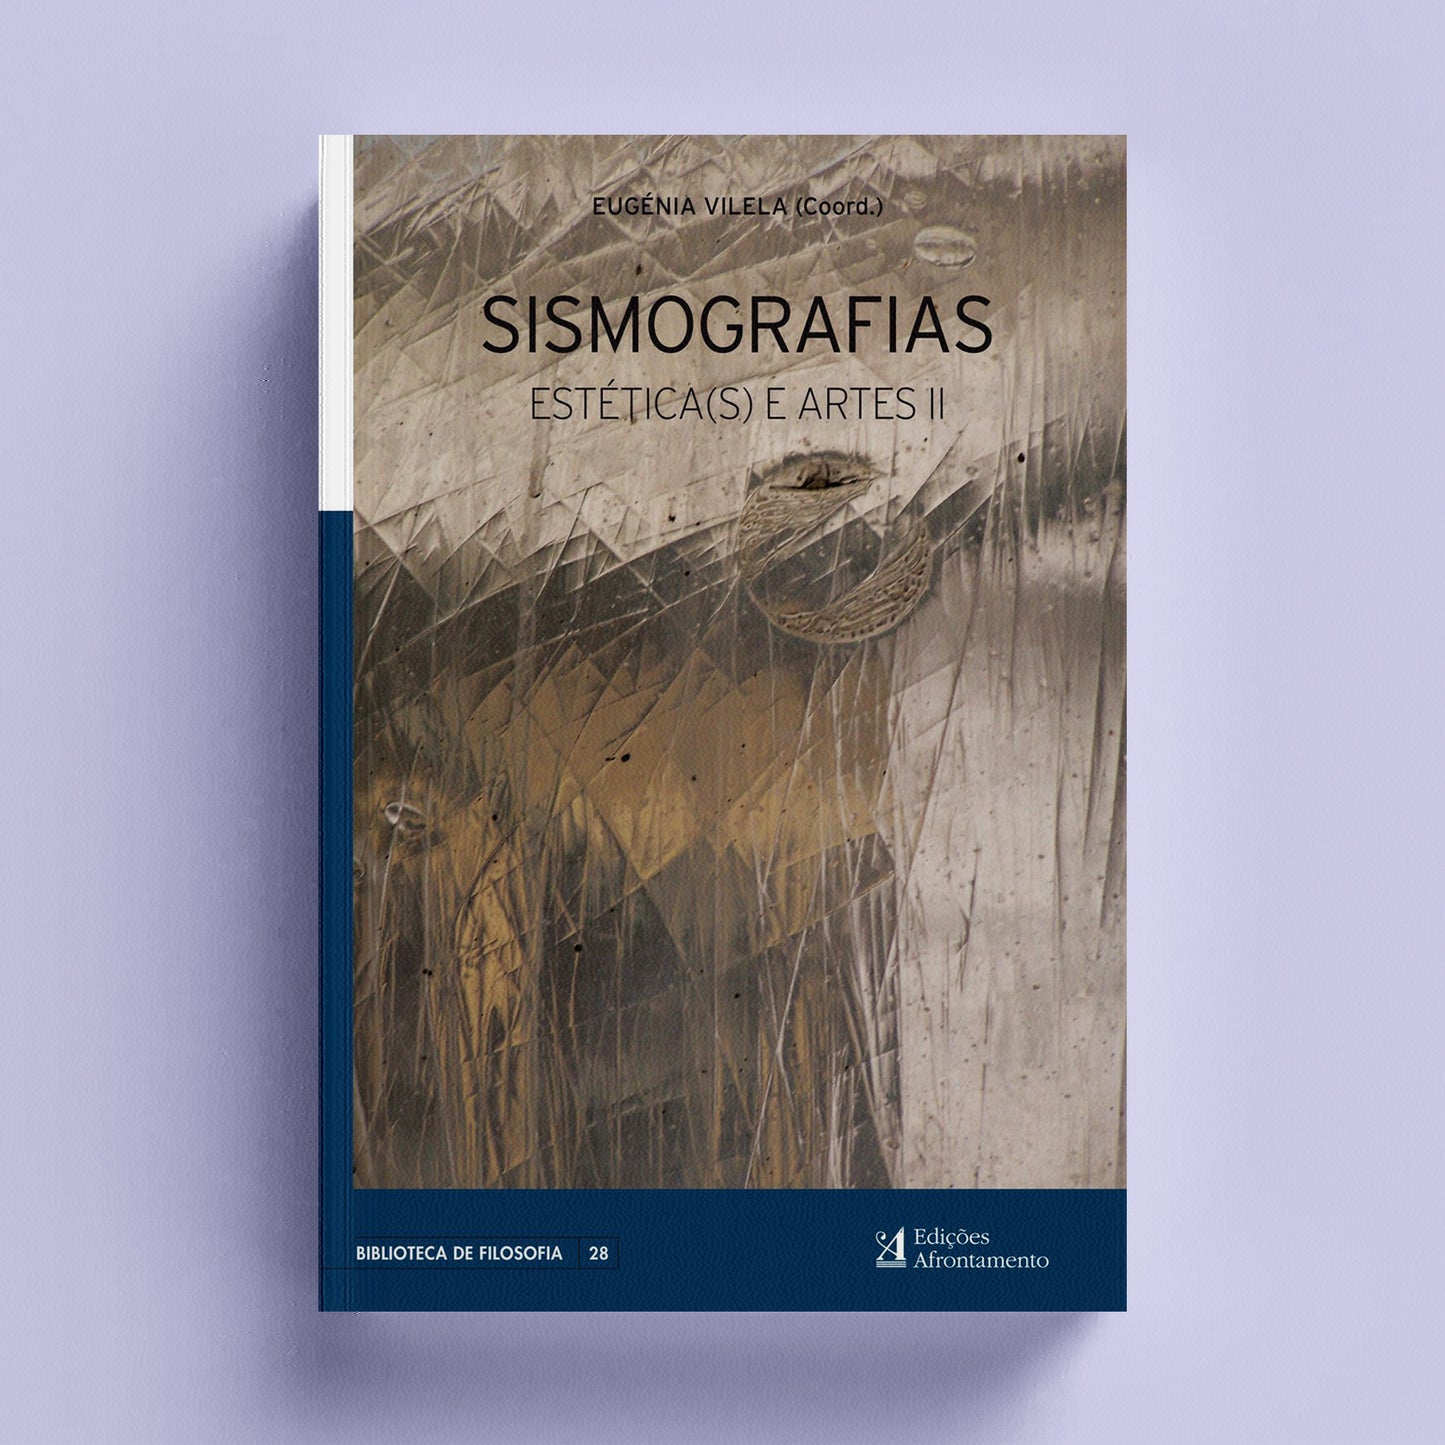 Sismografias. Estéticas(s) e Artes II